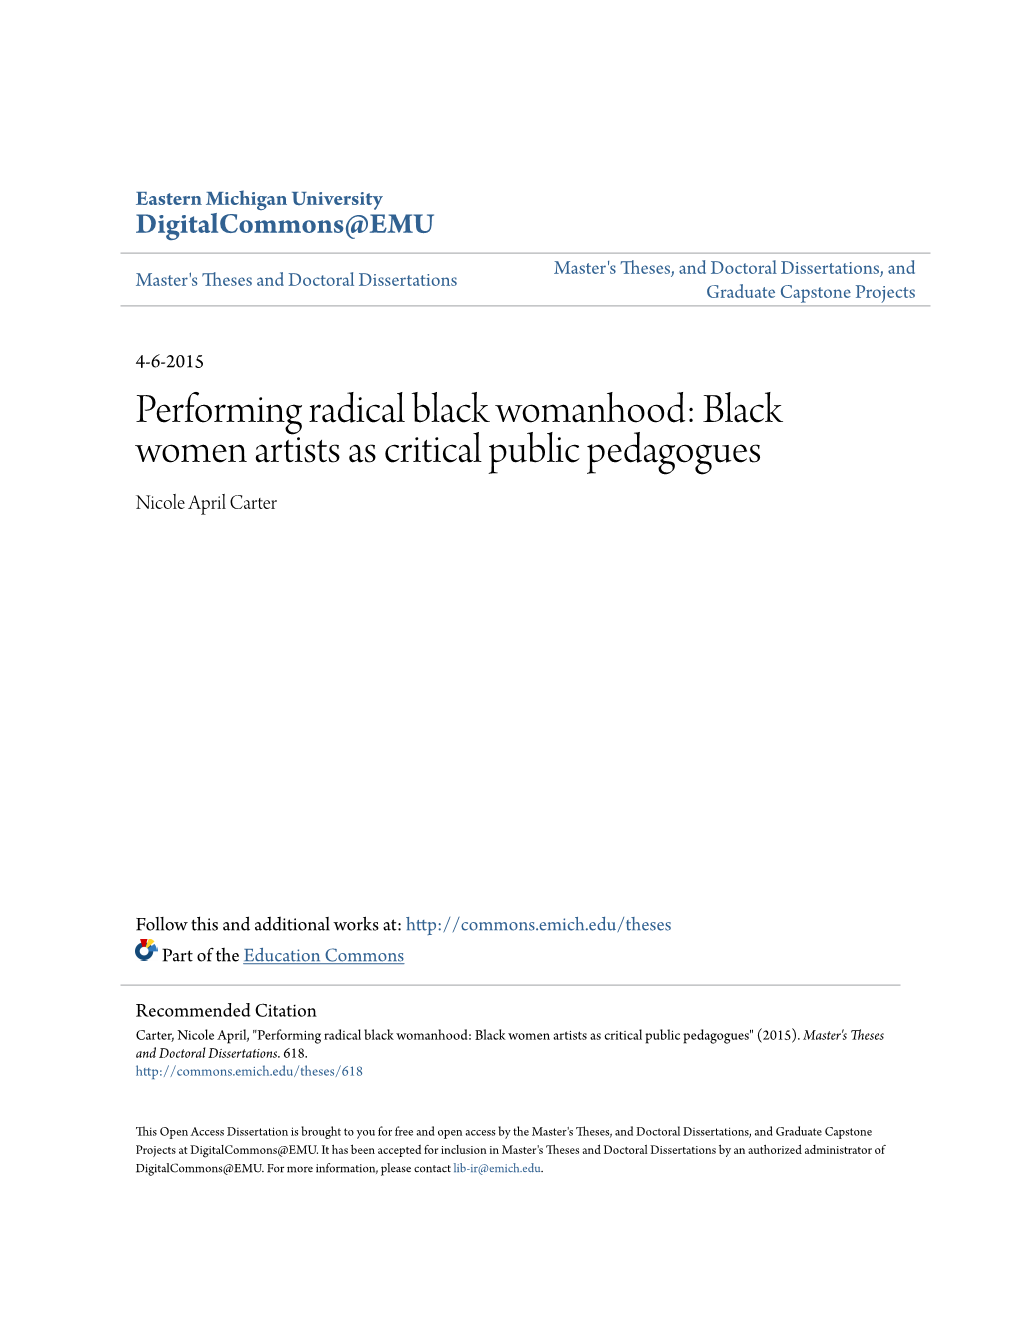 Black Women Artists As Critical Public Pedagogues Nicole April Carter